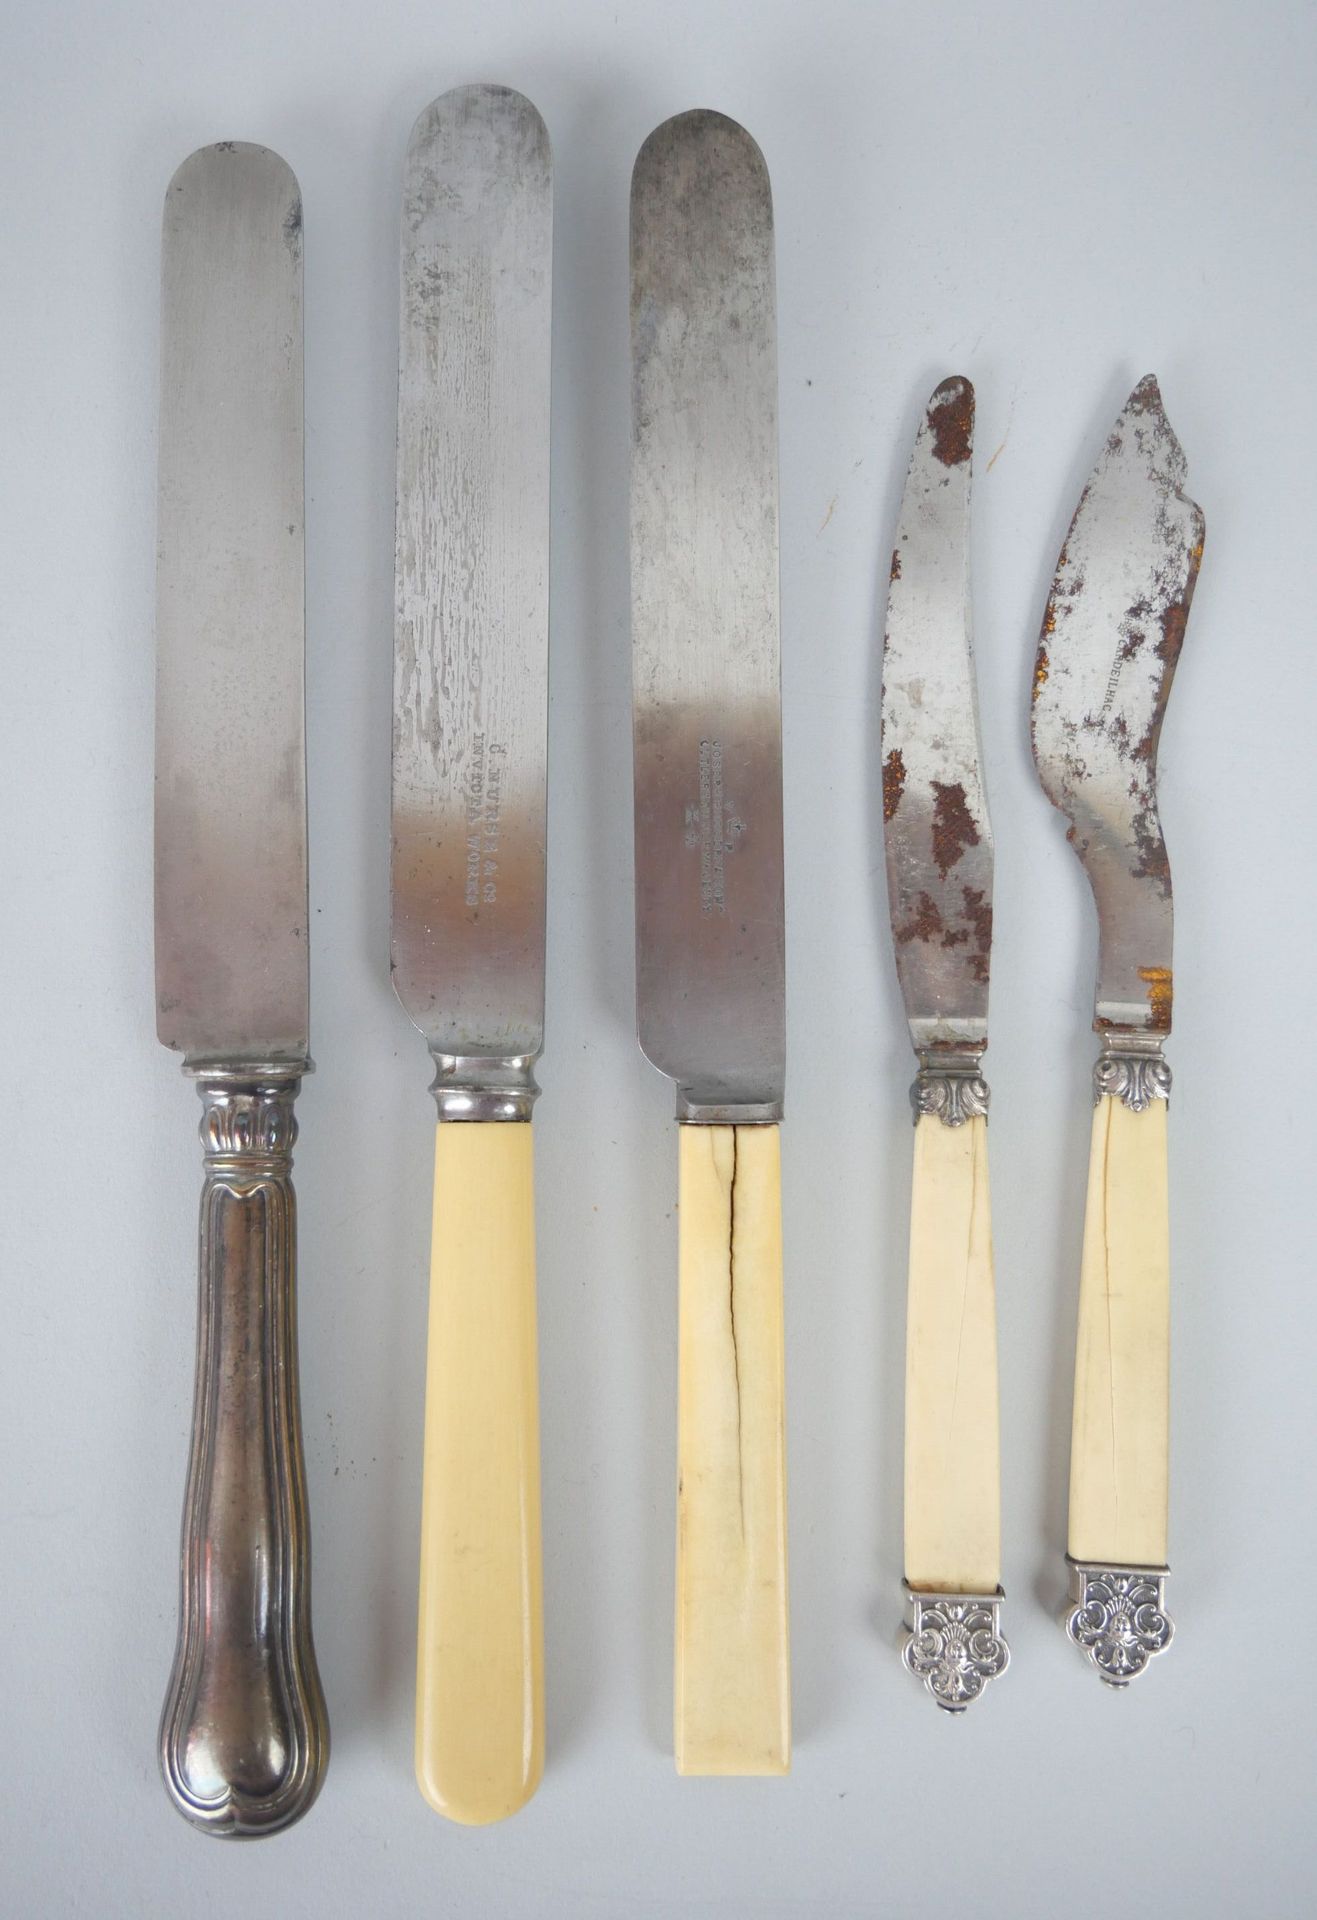 Null 一套刀具包括:

4把大的镀银刀，环形的刀身有加德隆装饰。长度：25.5厘米

约瑟夫-罗杰斯和儿子。她的专业是什么？5把刀。长度：25.5厘米和26&hellip;